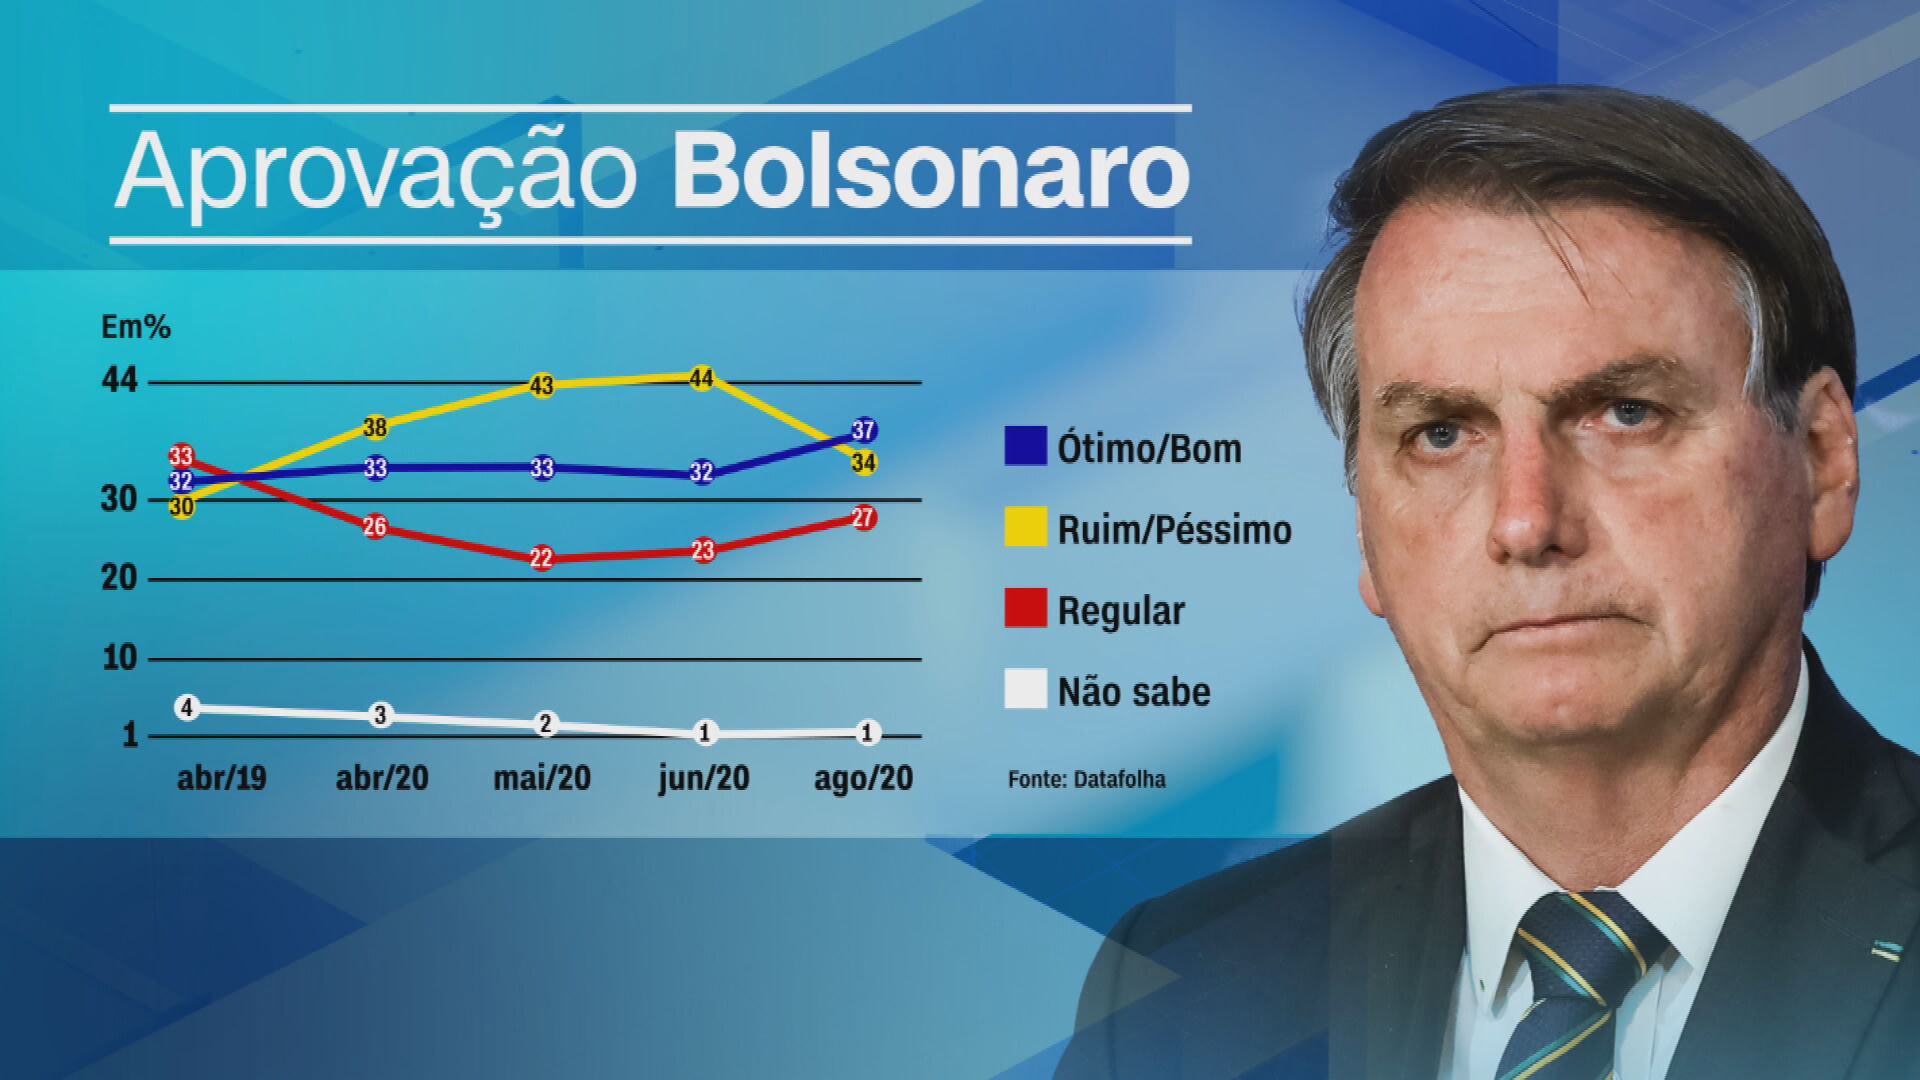 Gráfico mostra índices da aprovação do presidente Jair Bolsonaro, segundo pesqui